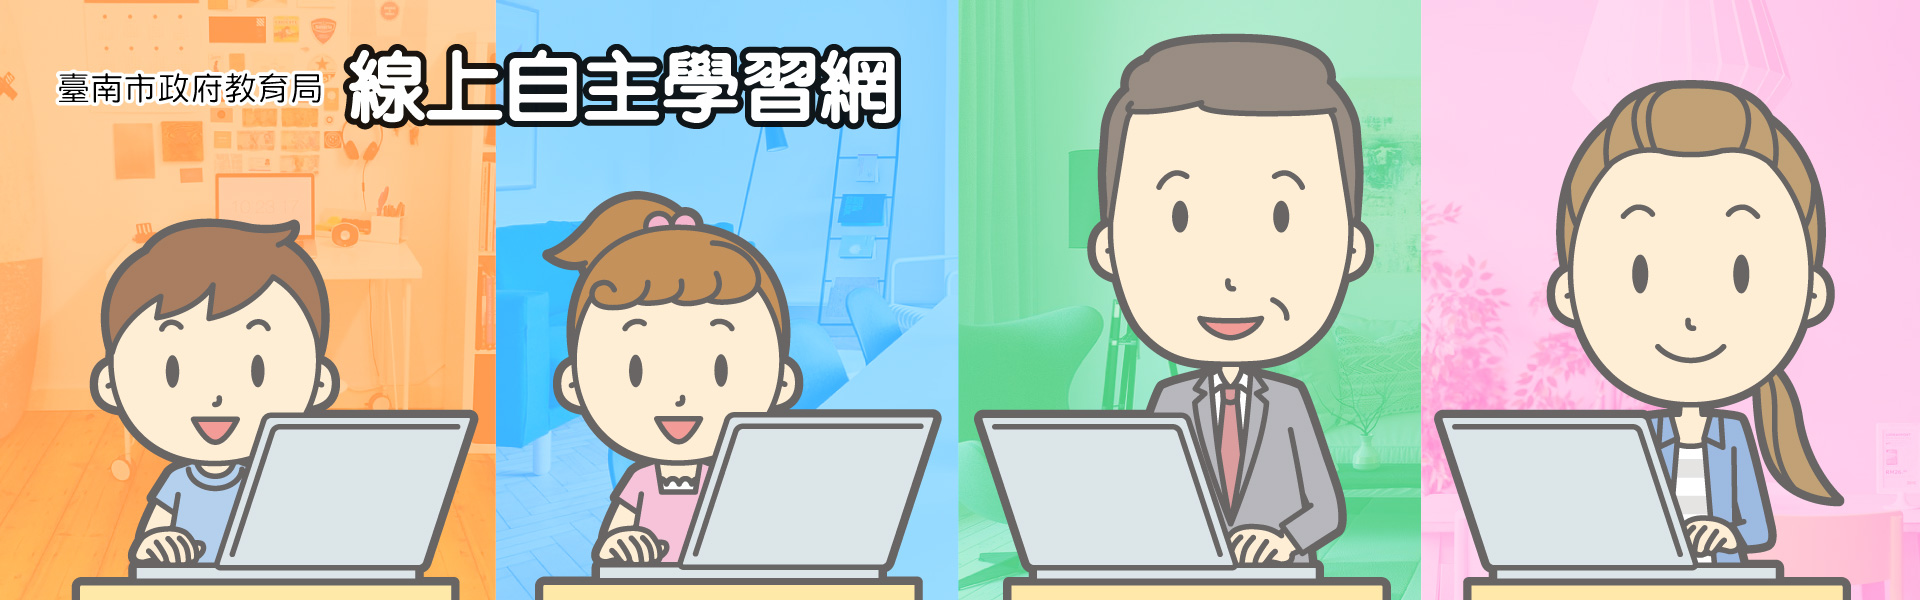 臺南市政府教育局線上自主學習網